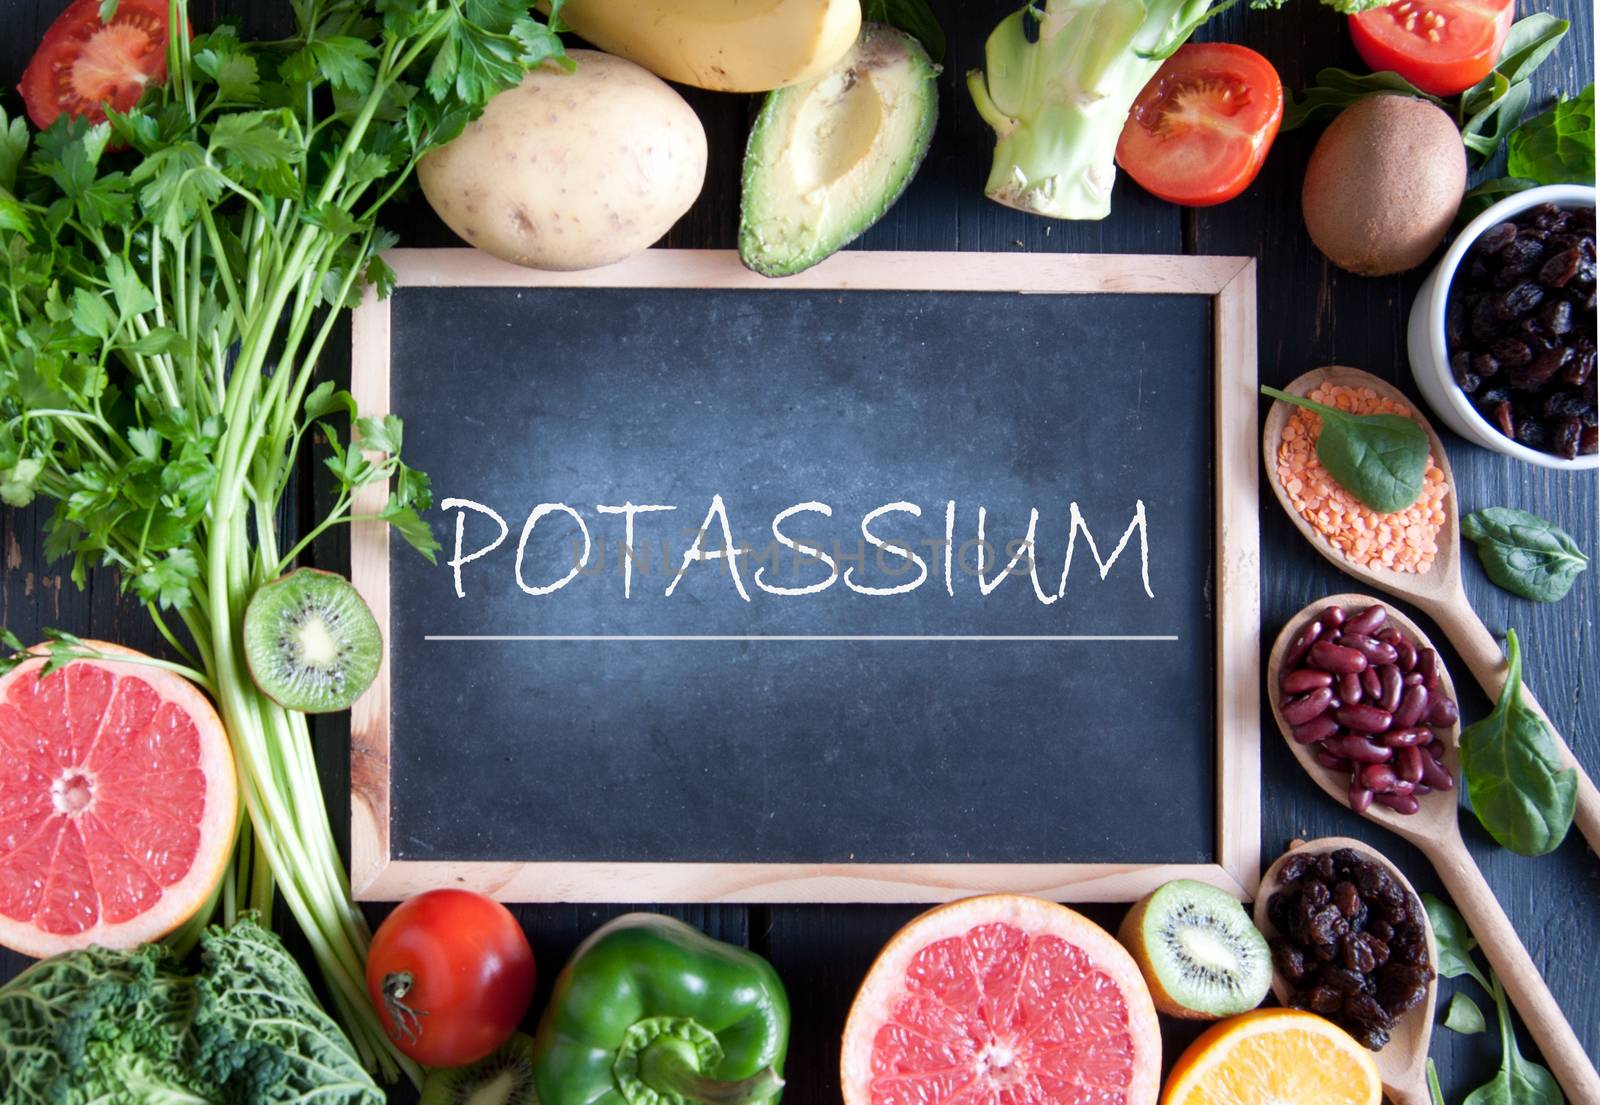 Potassium diet by unikpix